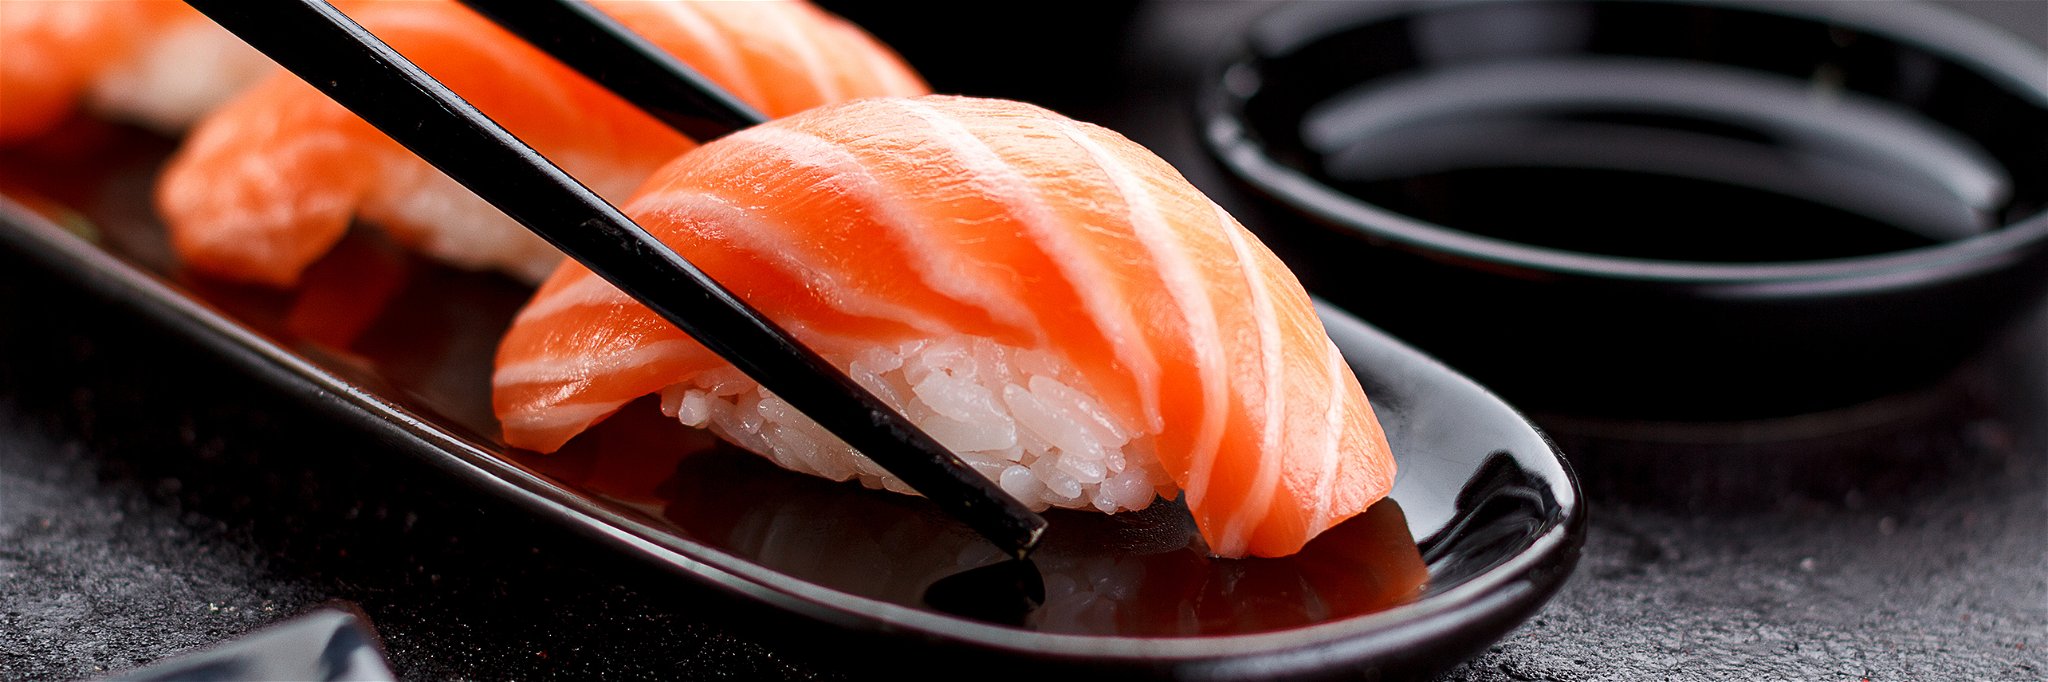 Salmon sushi nigiri